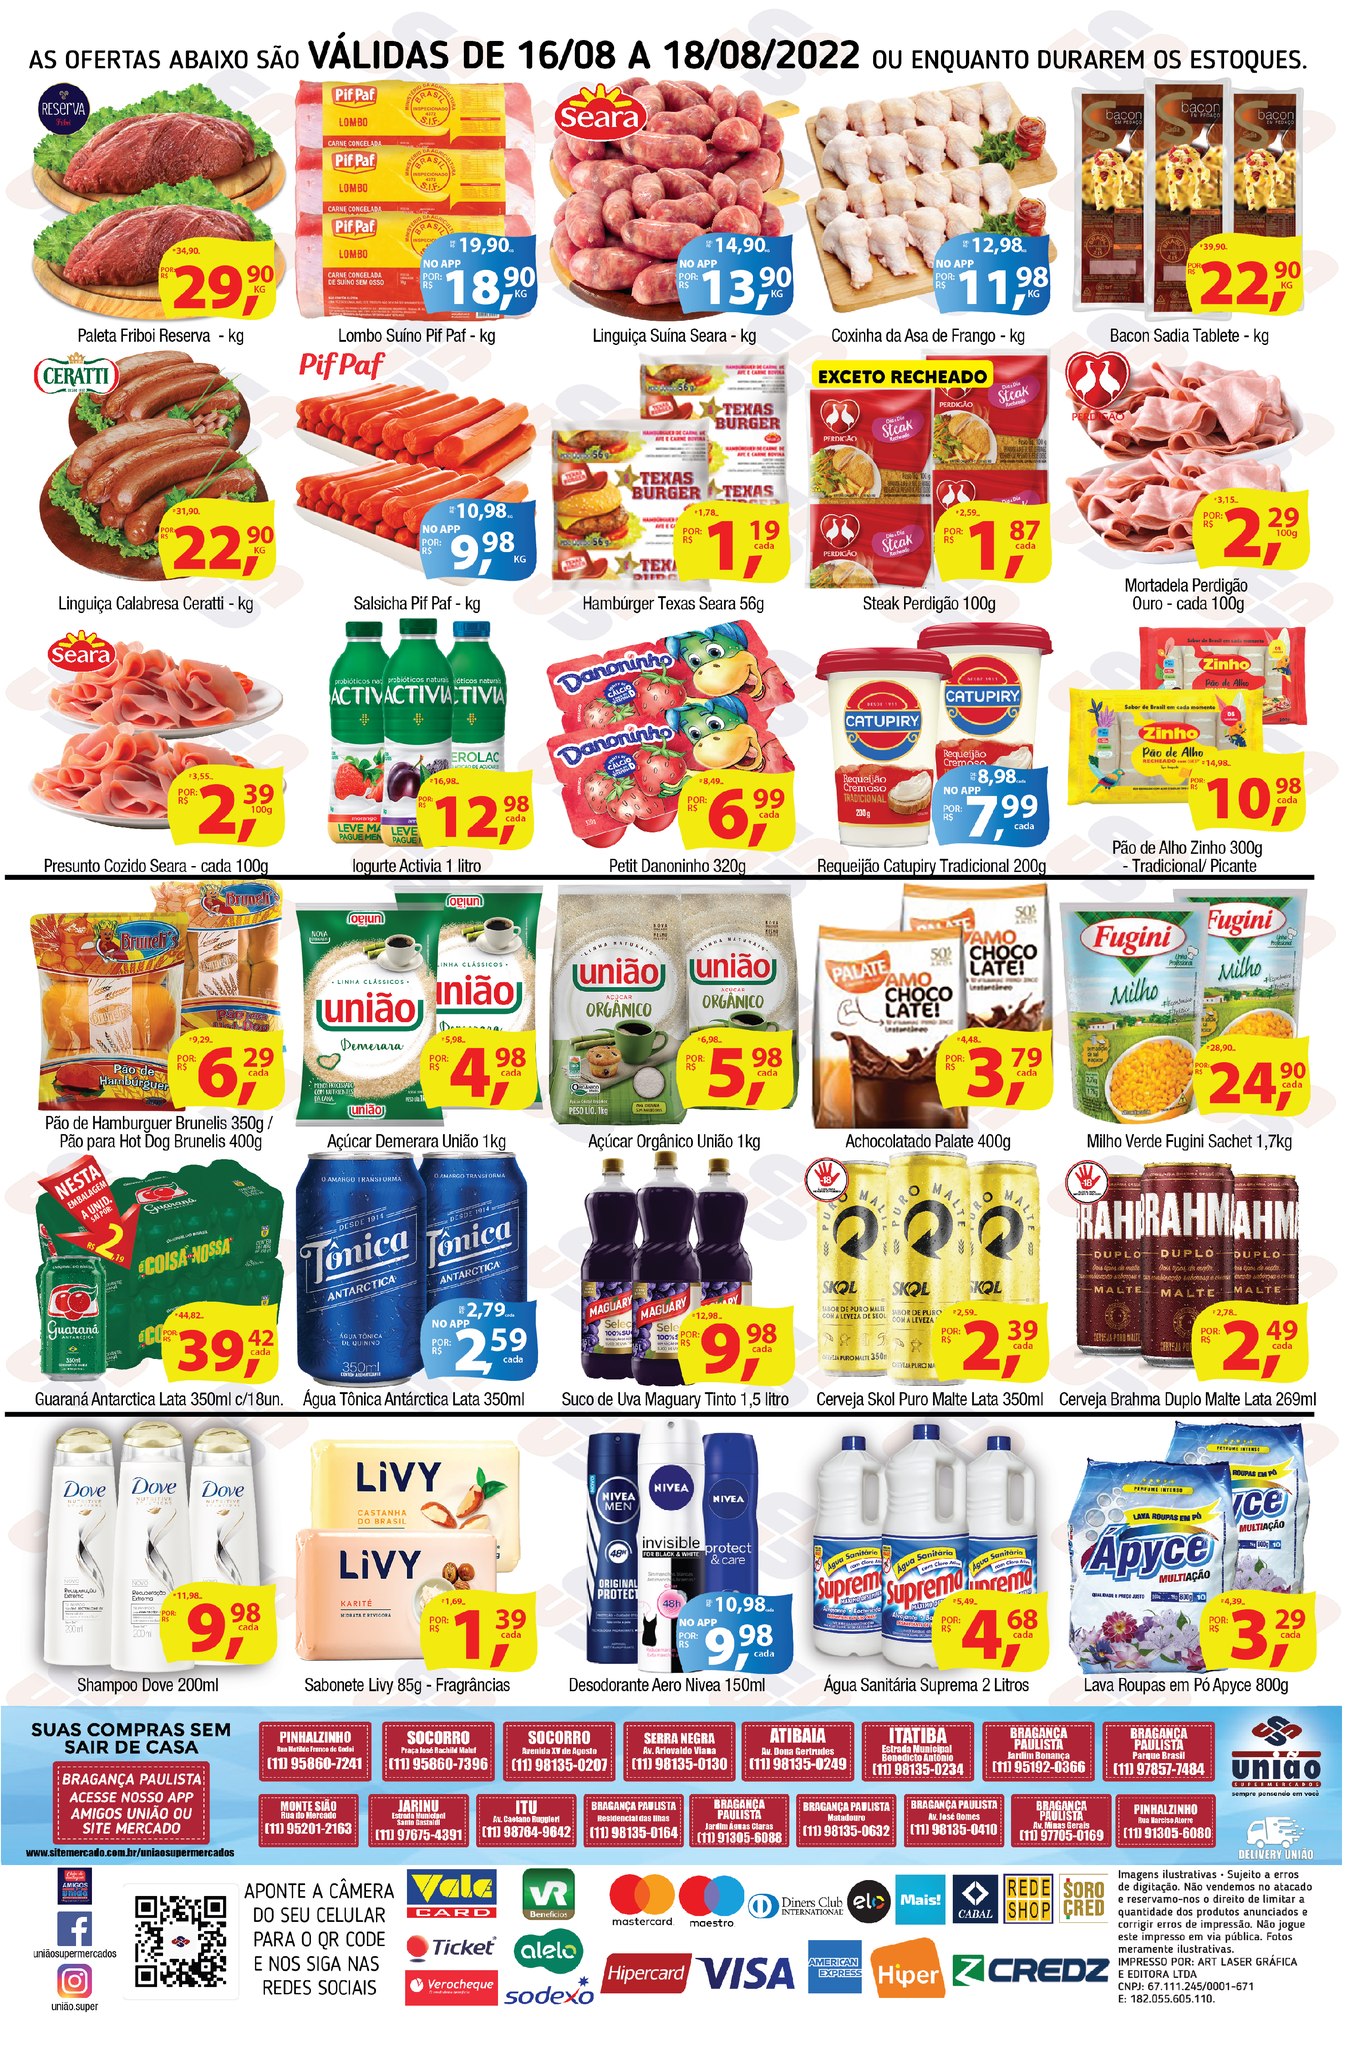 Açougue, bebidas, hortifrúti e mercaria com ofertas no União Supermercados